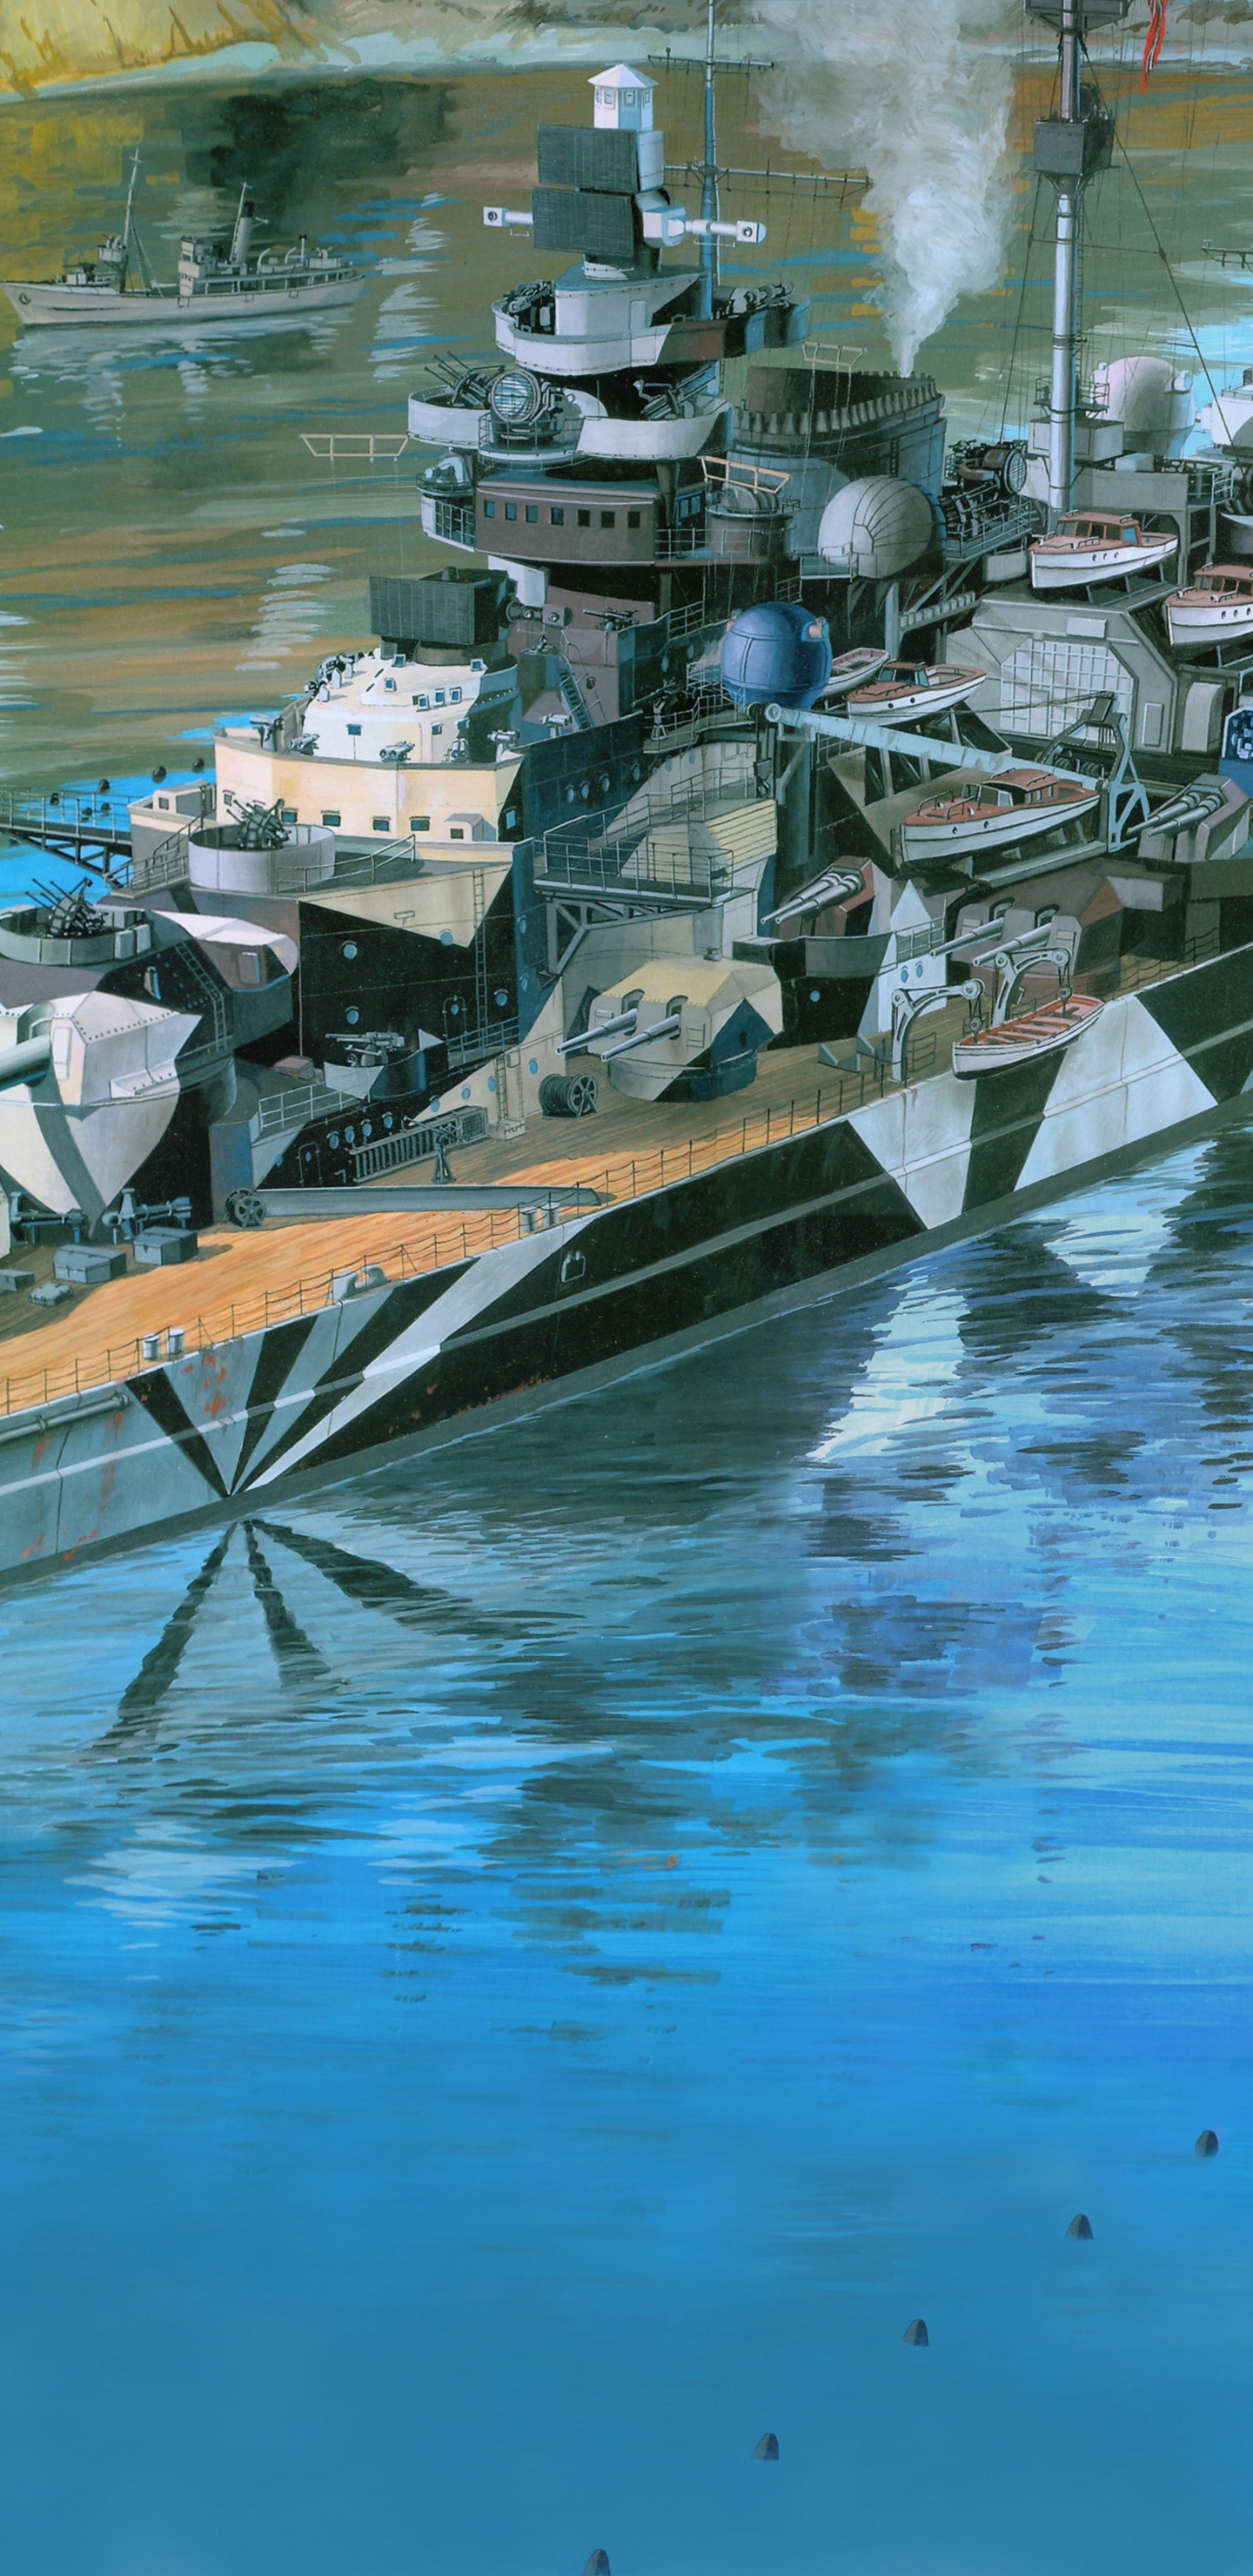 Acorazado Alemán Tirpitz, Revell, el Modelo de Plástico, Acorazado Alemán Bismarck, Barco. Wallpaper in 1440x2960 Resolution